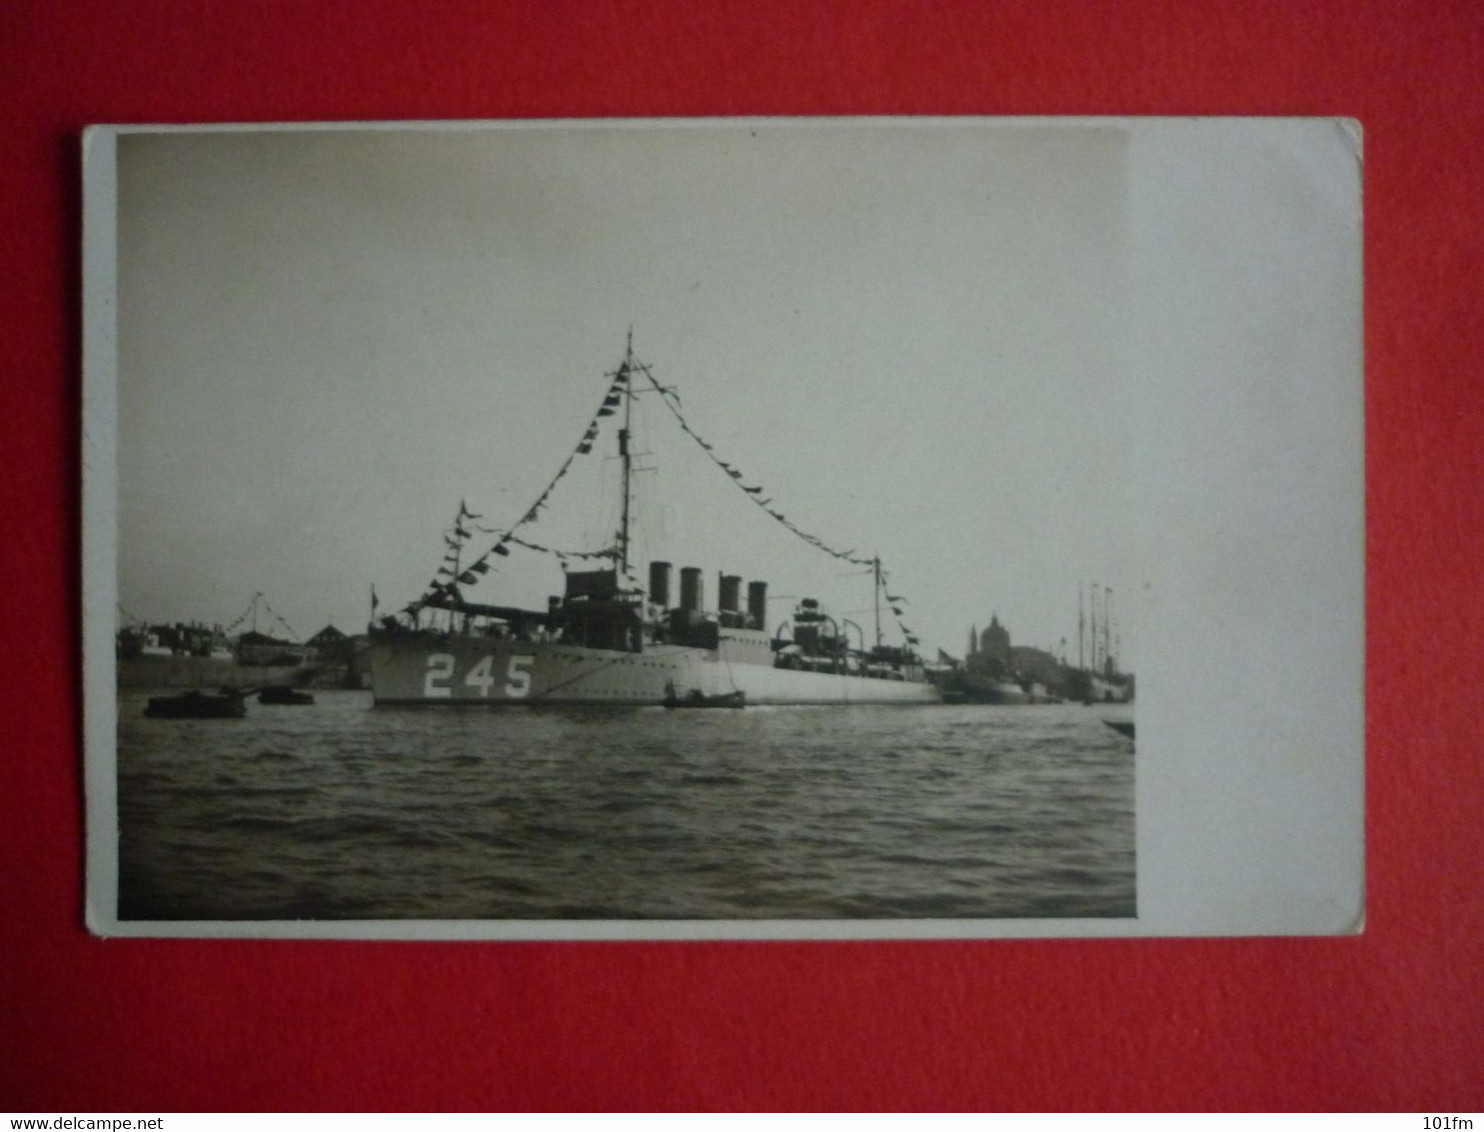 ITALY , USS REUBEN JAMES IN VENEZIA , EARLY 1930 - Guerre